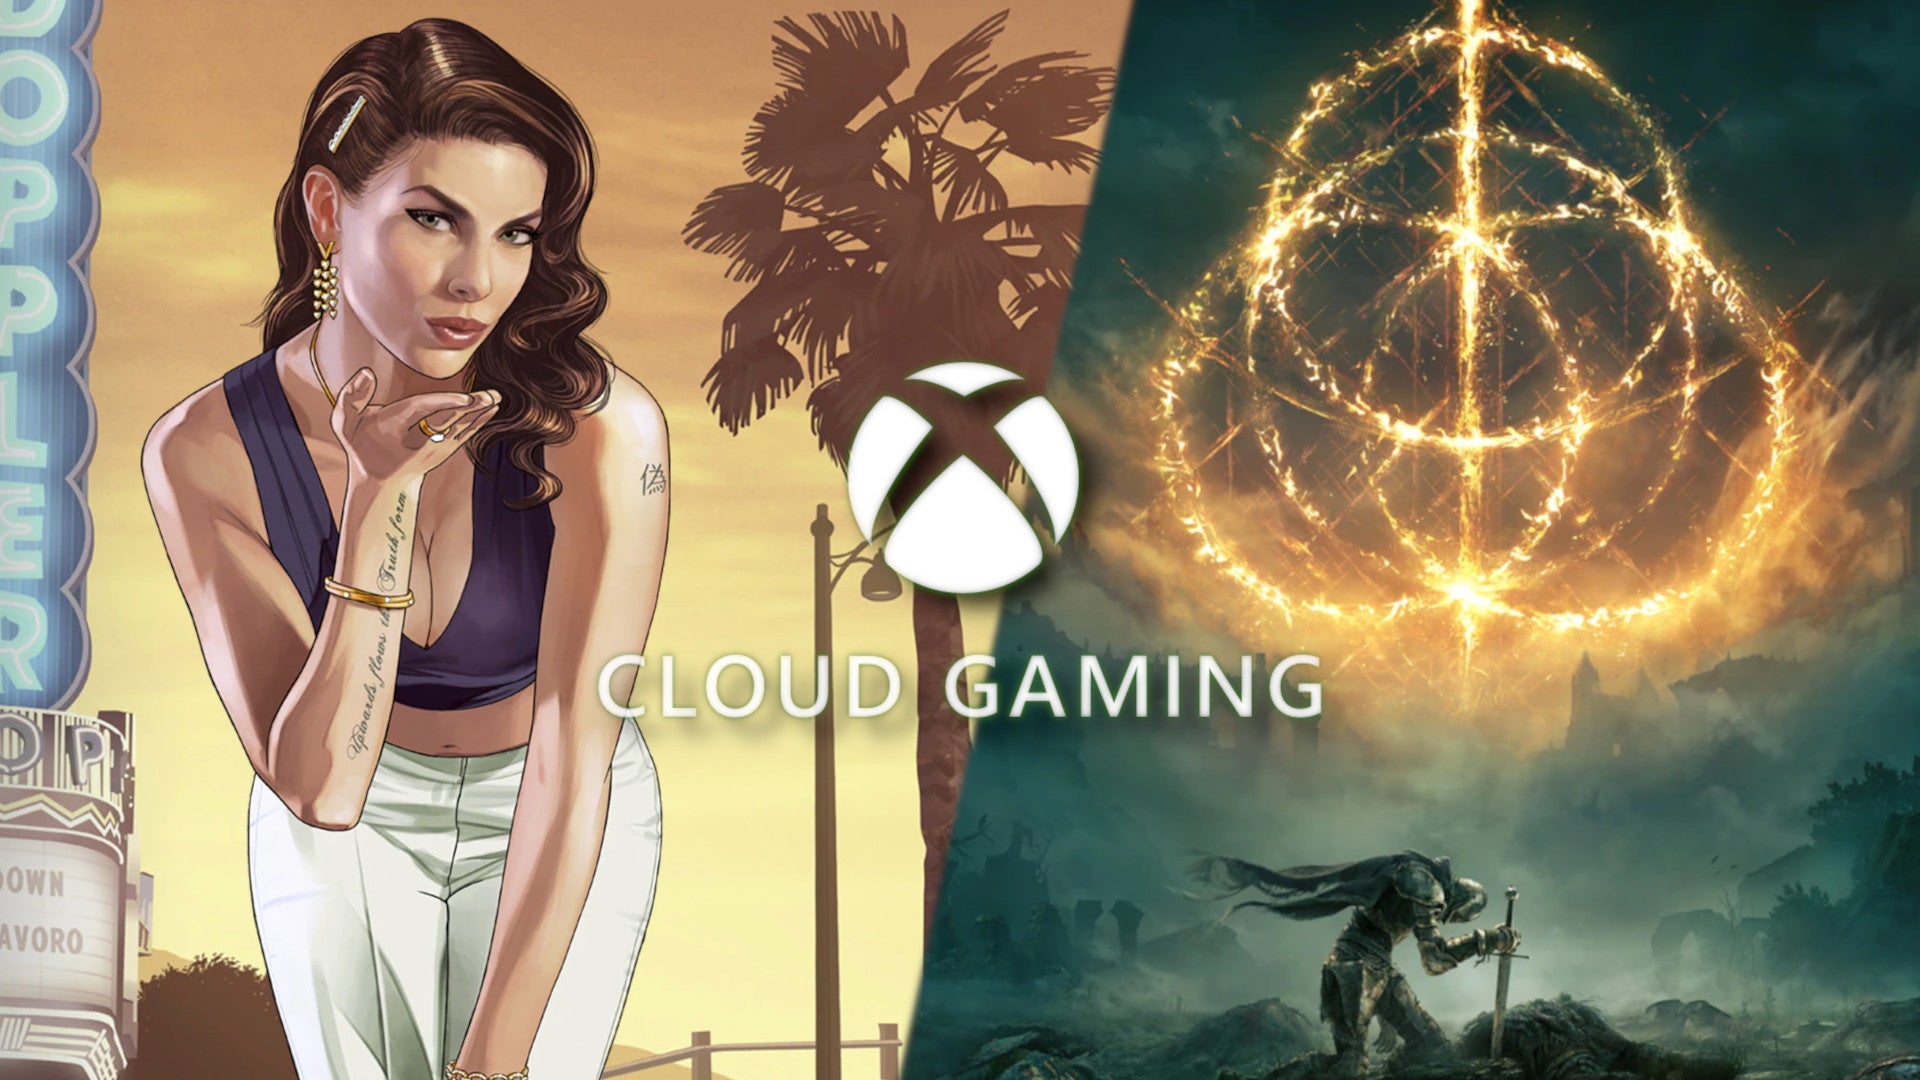 Bilder zu GTA 5 und Elden Ring könnten bald via Xbox Cloud Gaming spielbar sein